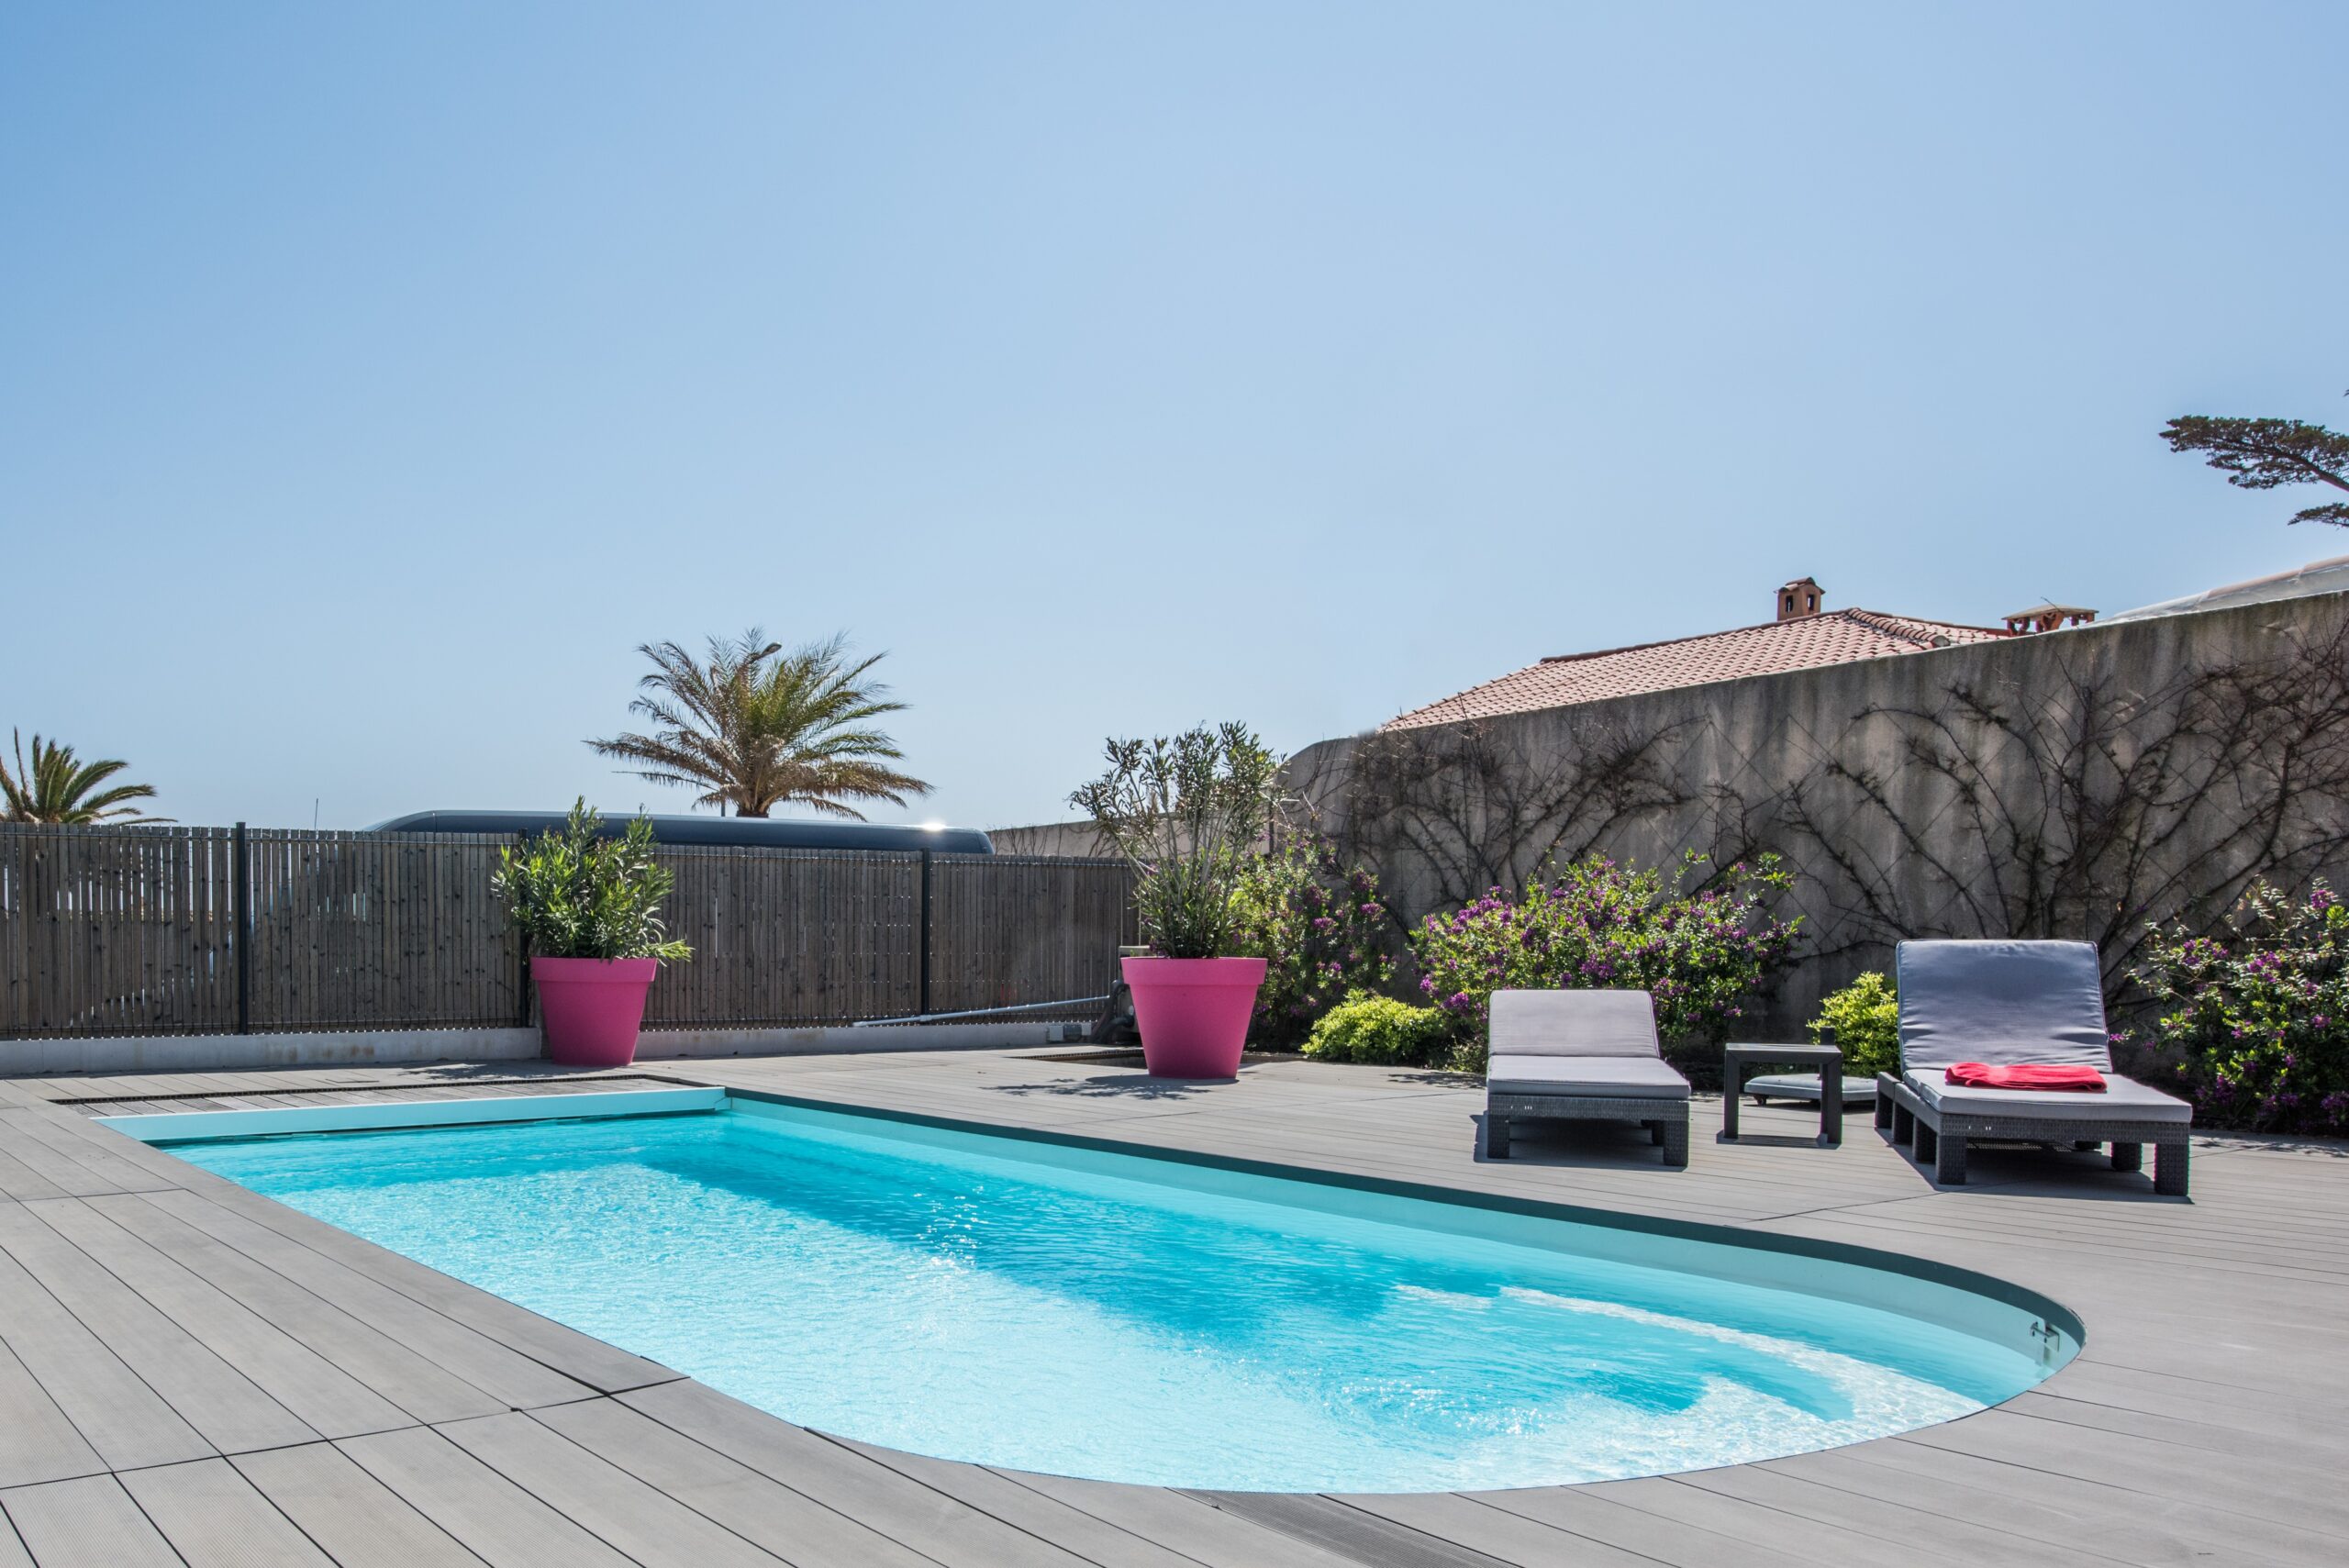 Vakantiehuis huren aan de Côte d'Azur | groepen tot 6 personen | privé zwembad | vakantiewoning op wandelafstand van het strand